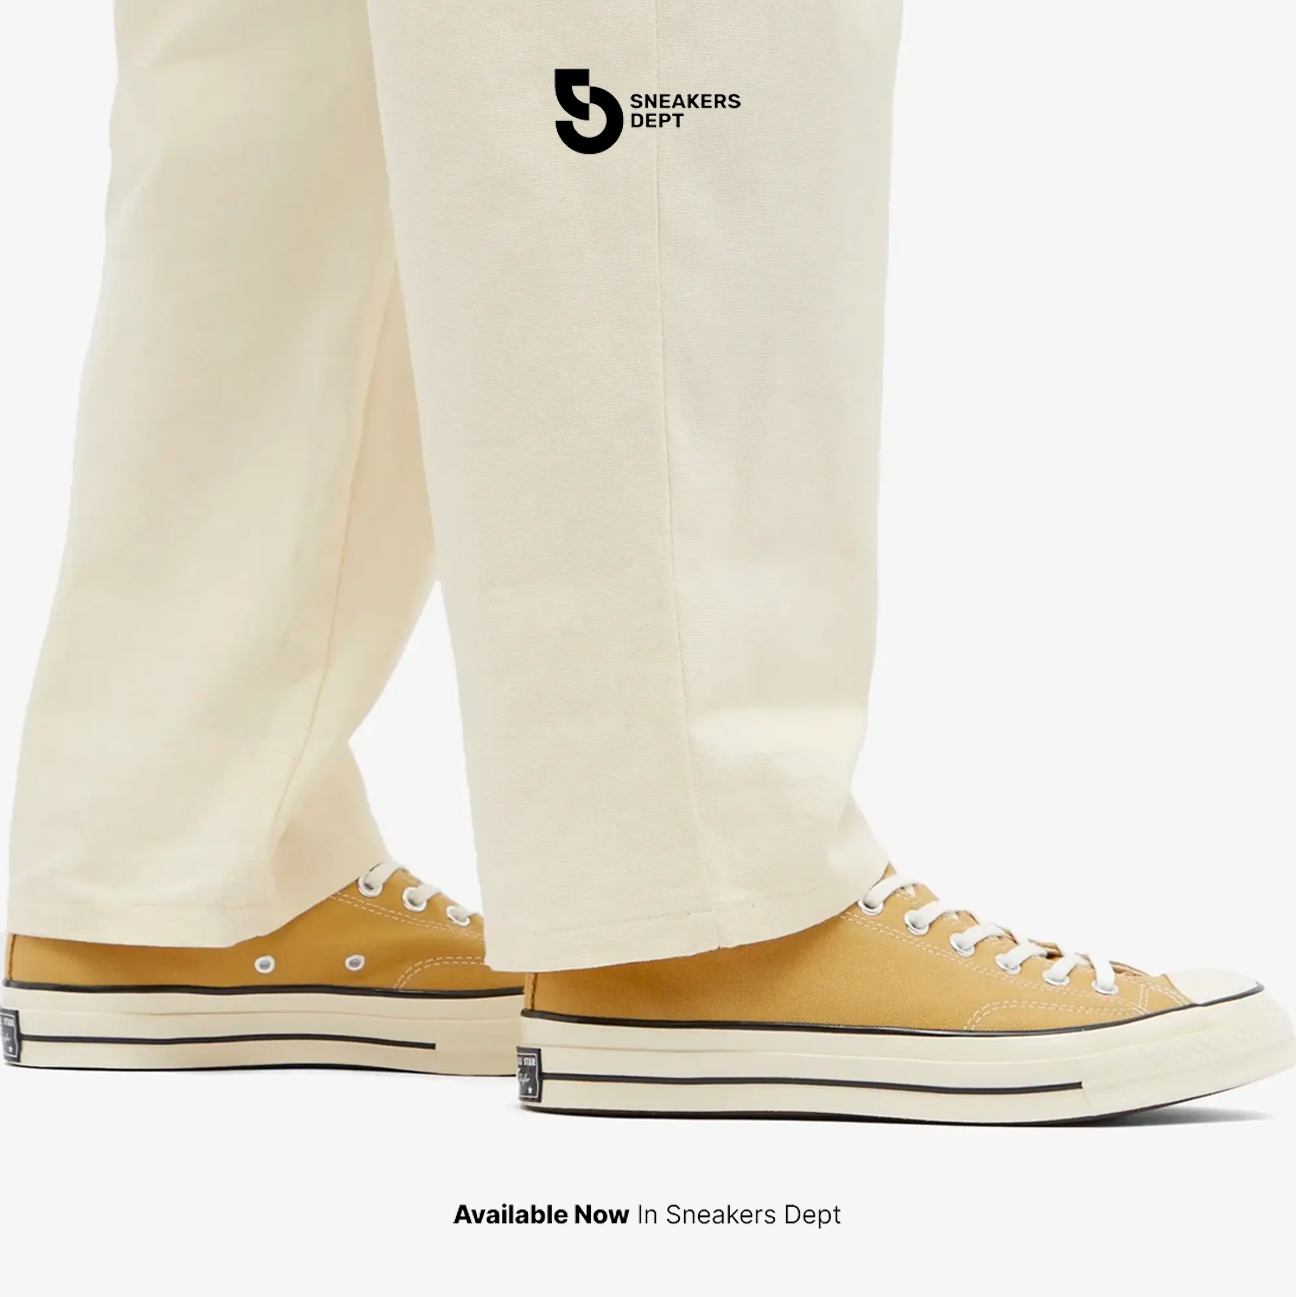 Sepatu Sneakers Unisex CONVERSE CHUCK 70 0X A04593C ORIGINAL